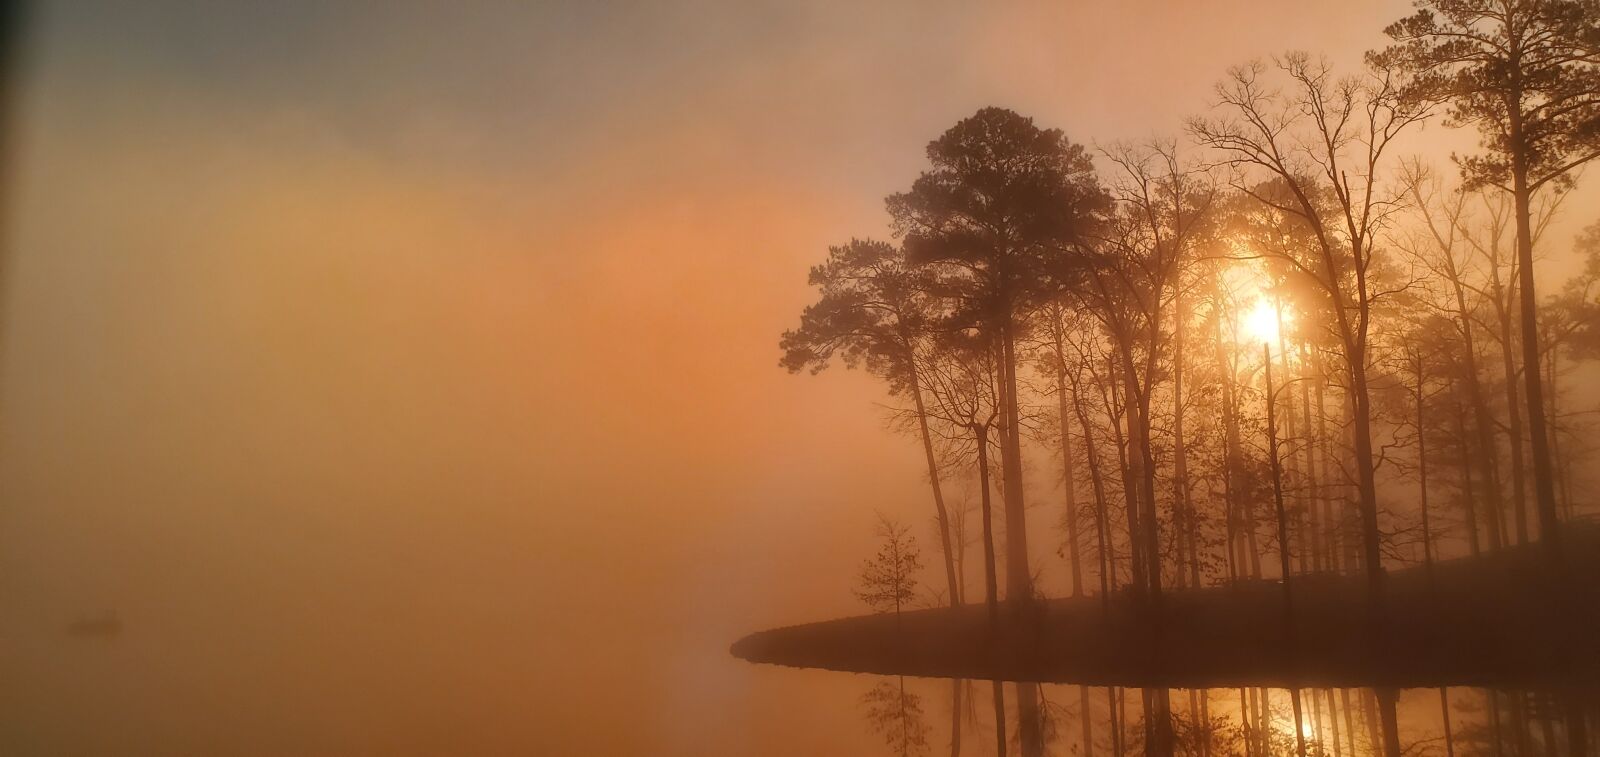 Samsung Galaxy S10e sample photo. Sunrise, lake, fog photography